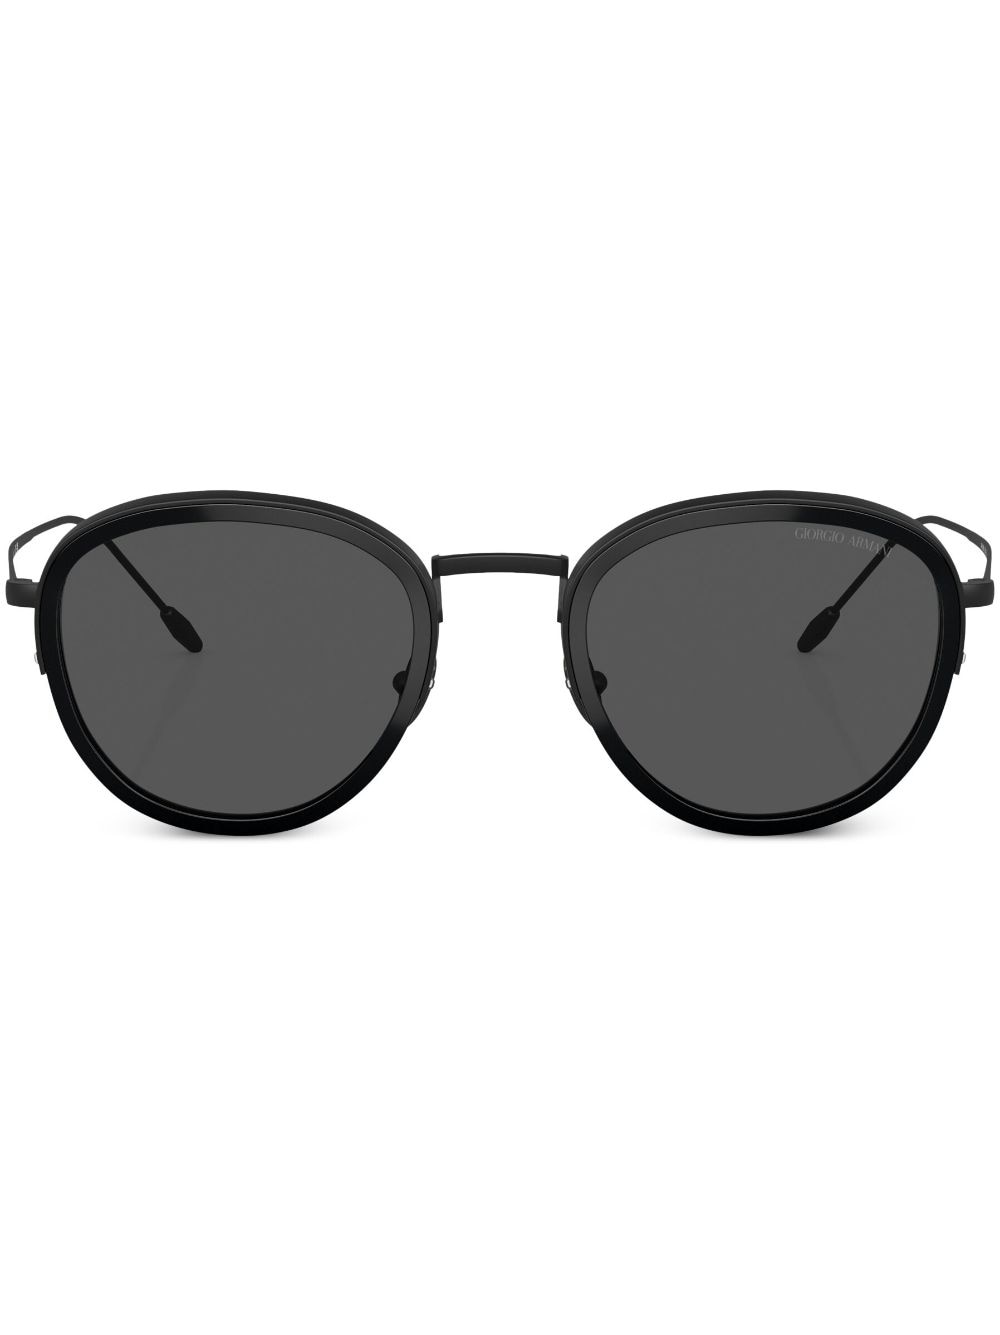 Giorgio Armani round frame sunglasses - Black von Giorgio Armani